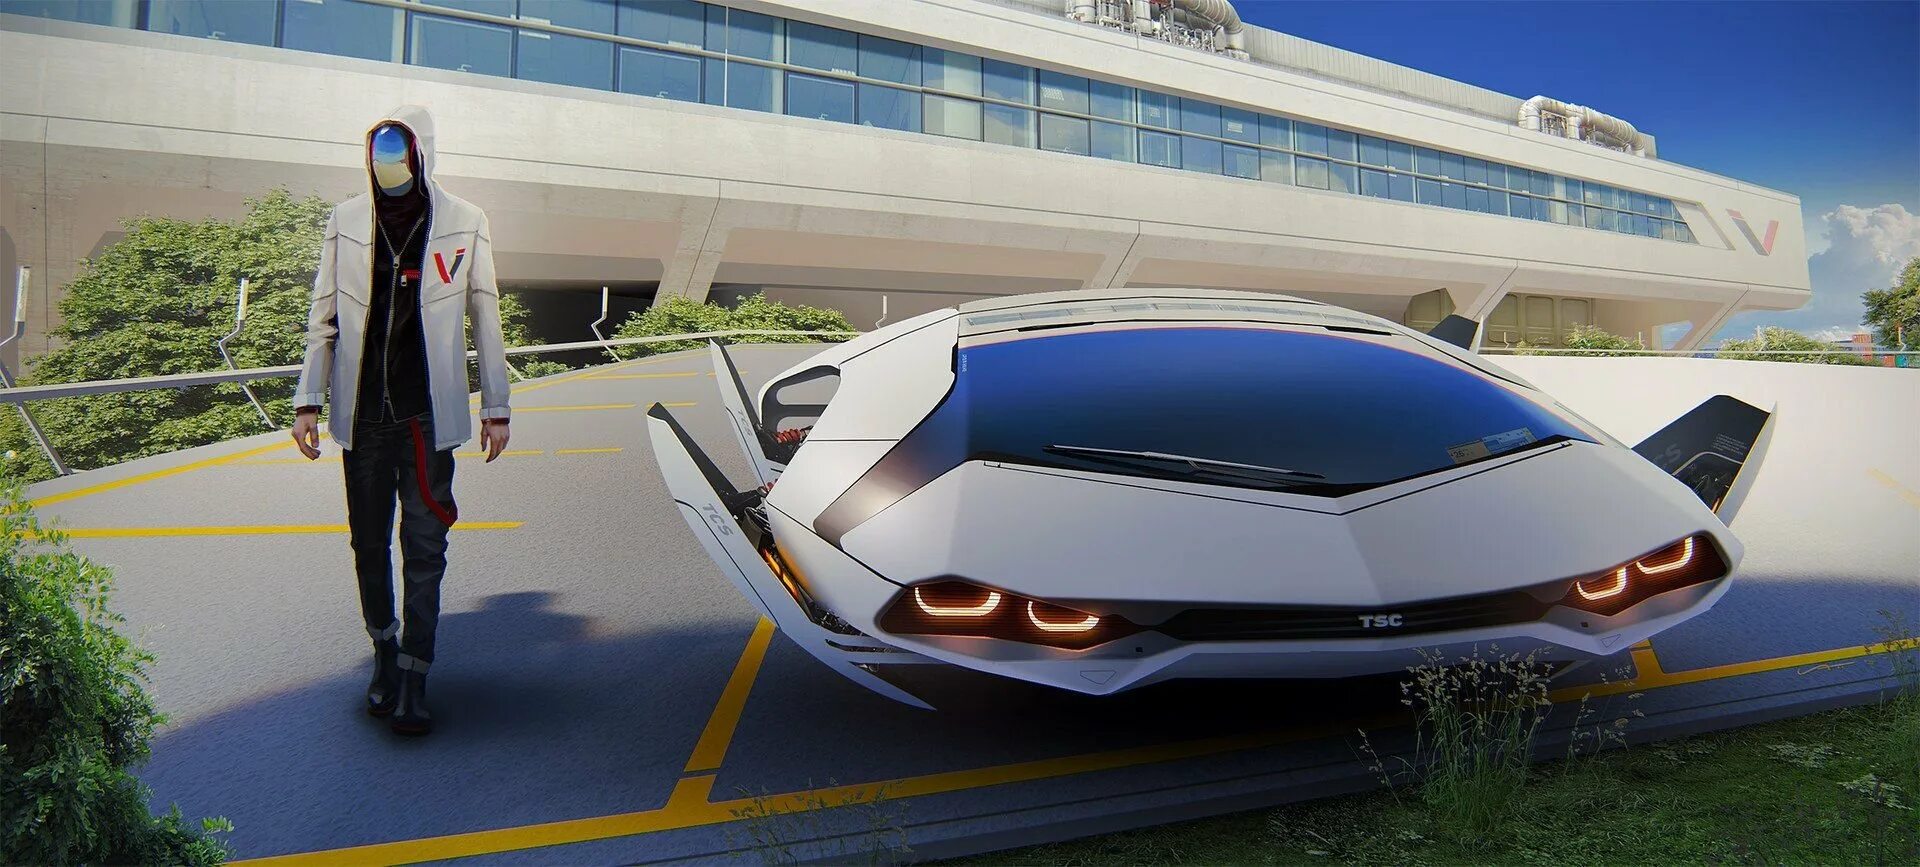 Включи машины летают. Концепт беспилотного аэротакси. Тесла футуризм. Машины будущего. Машины в будущем.